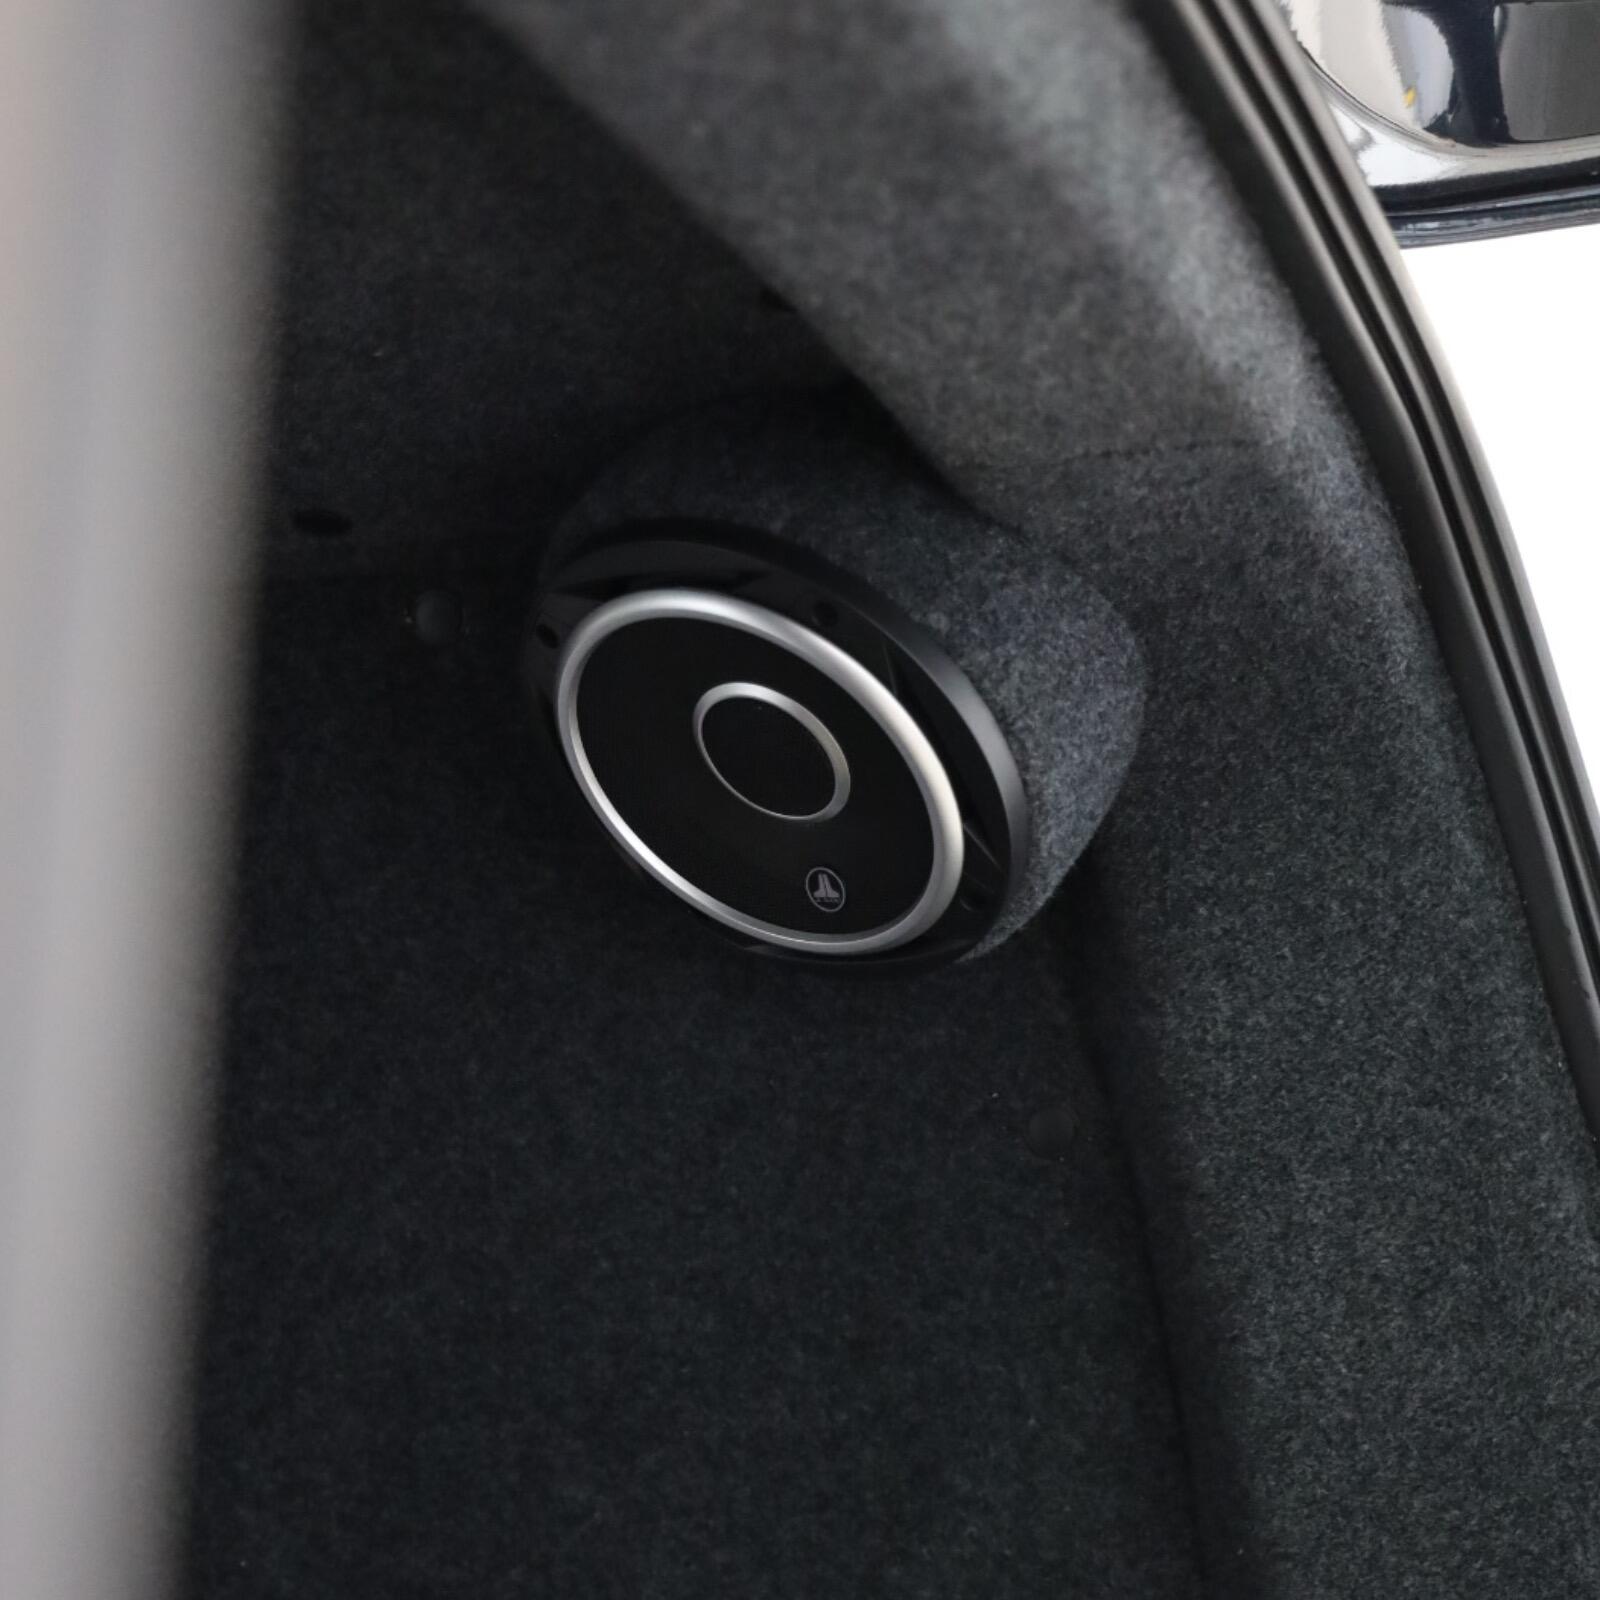 Volkswagen Transporter Speaker Pods for the Rear Quarter Panels in a VW T5 & T6